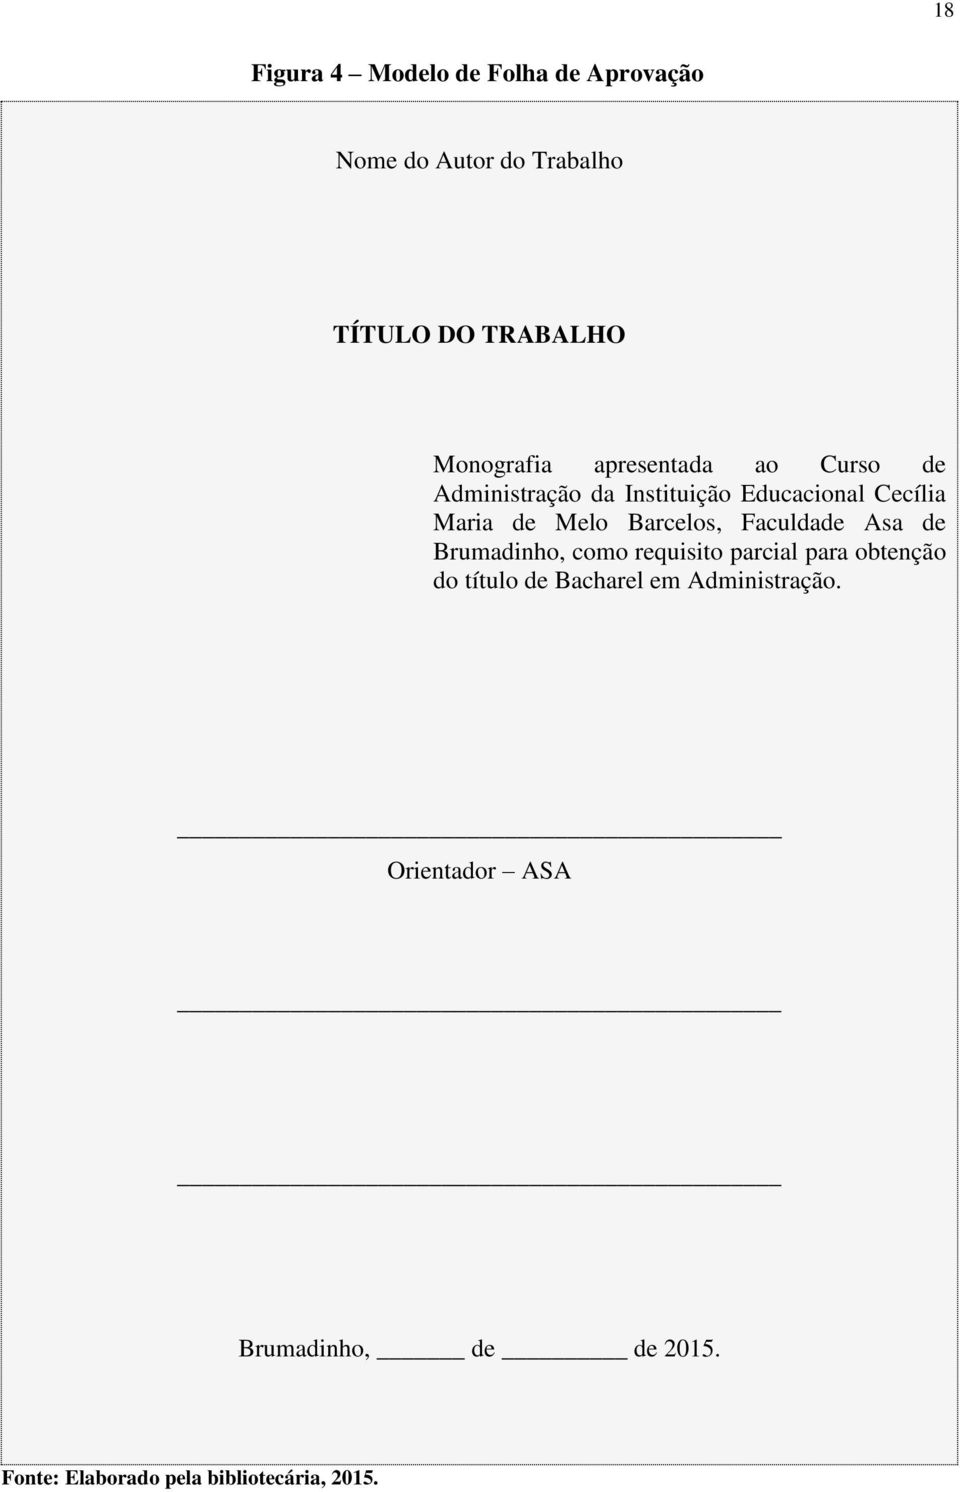 Melo Barcelos, Faculdade Asa de Brumadinho, como requisito parcial para obtenção do título de